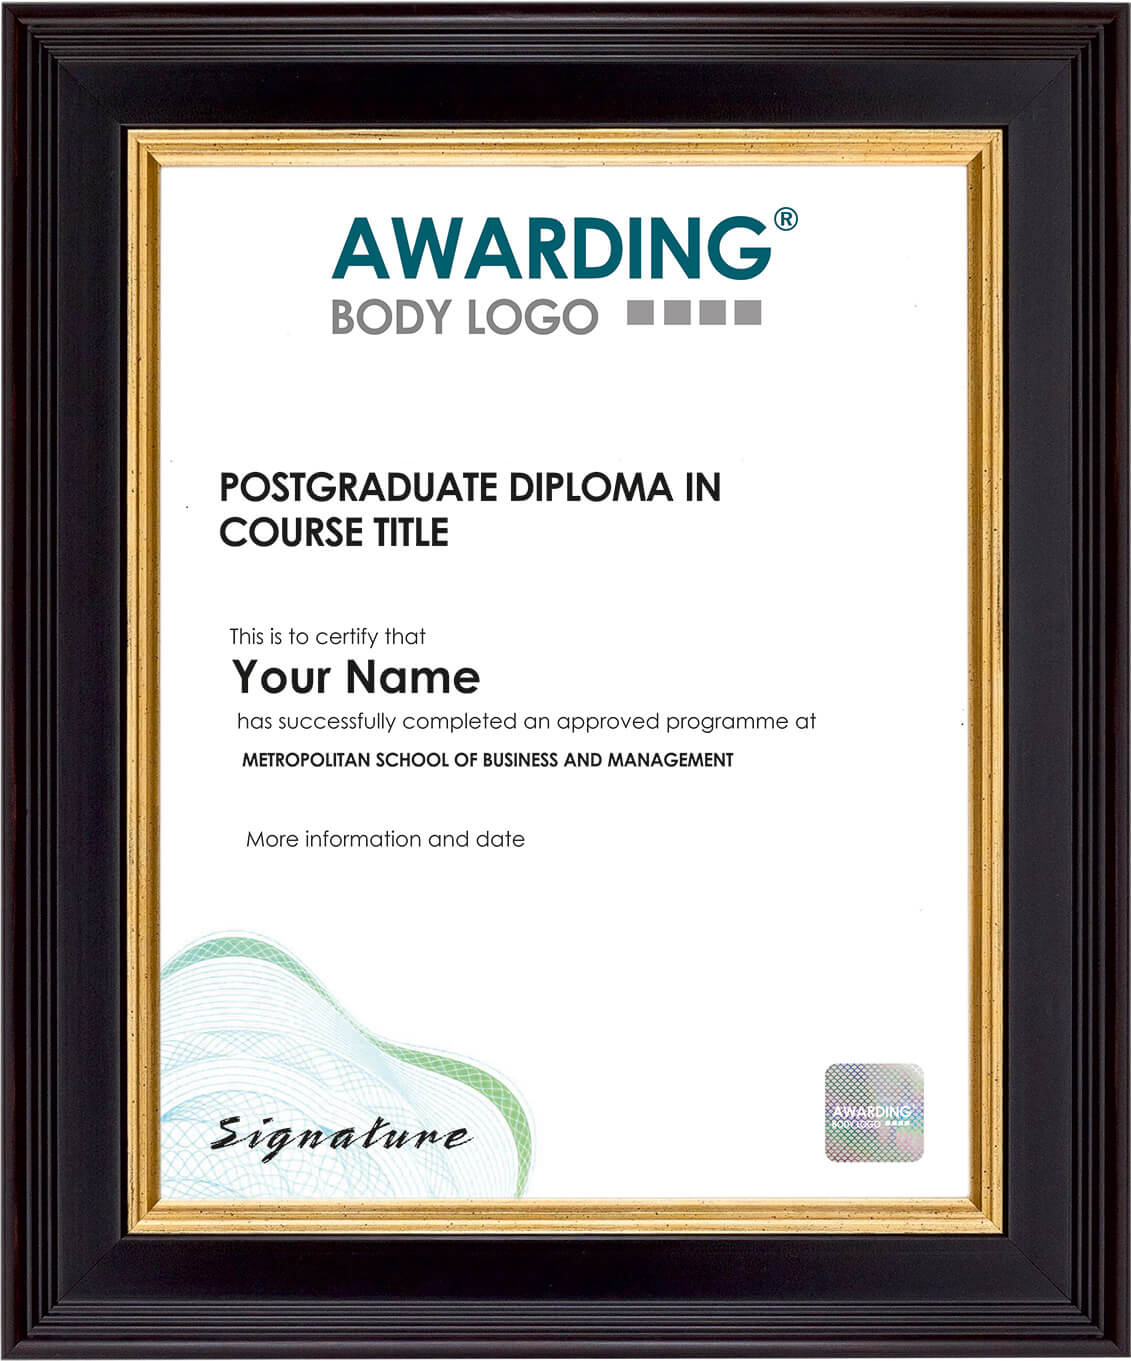 International Postgraduate Diploma Sample Certificate